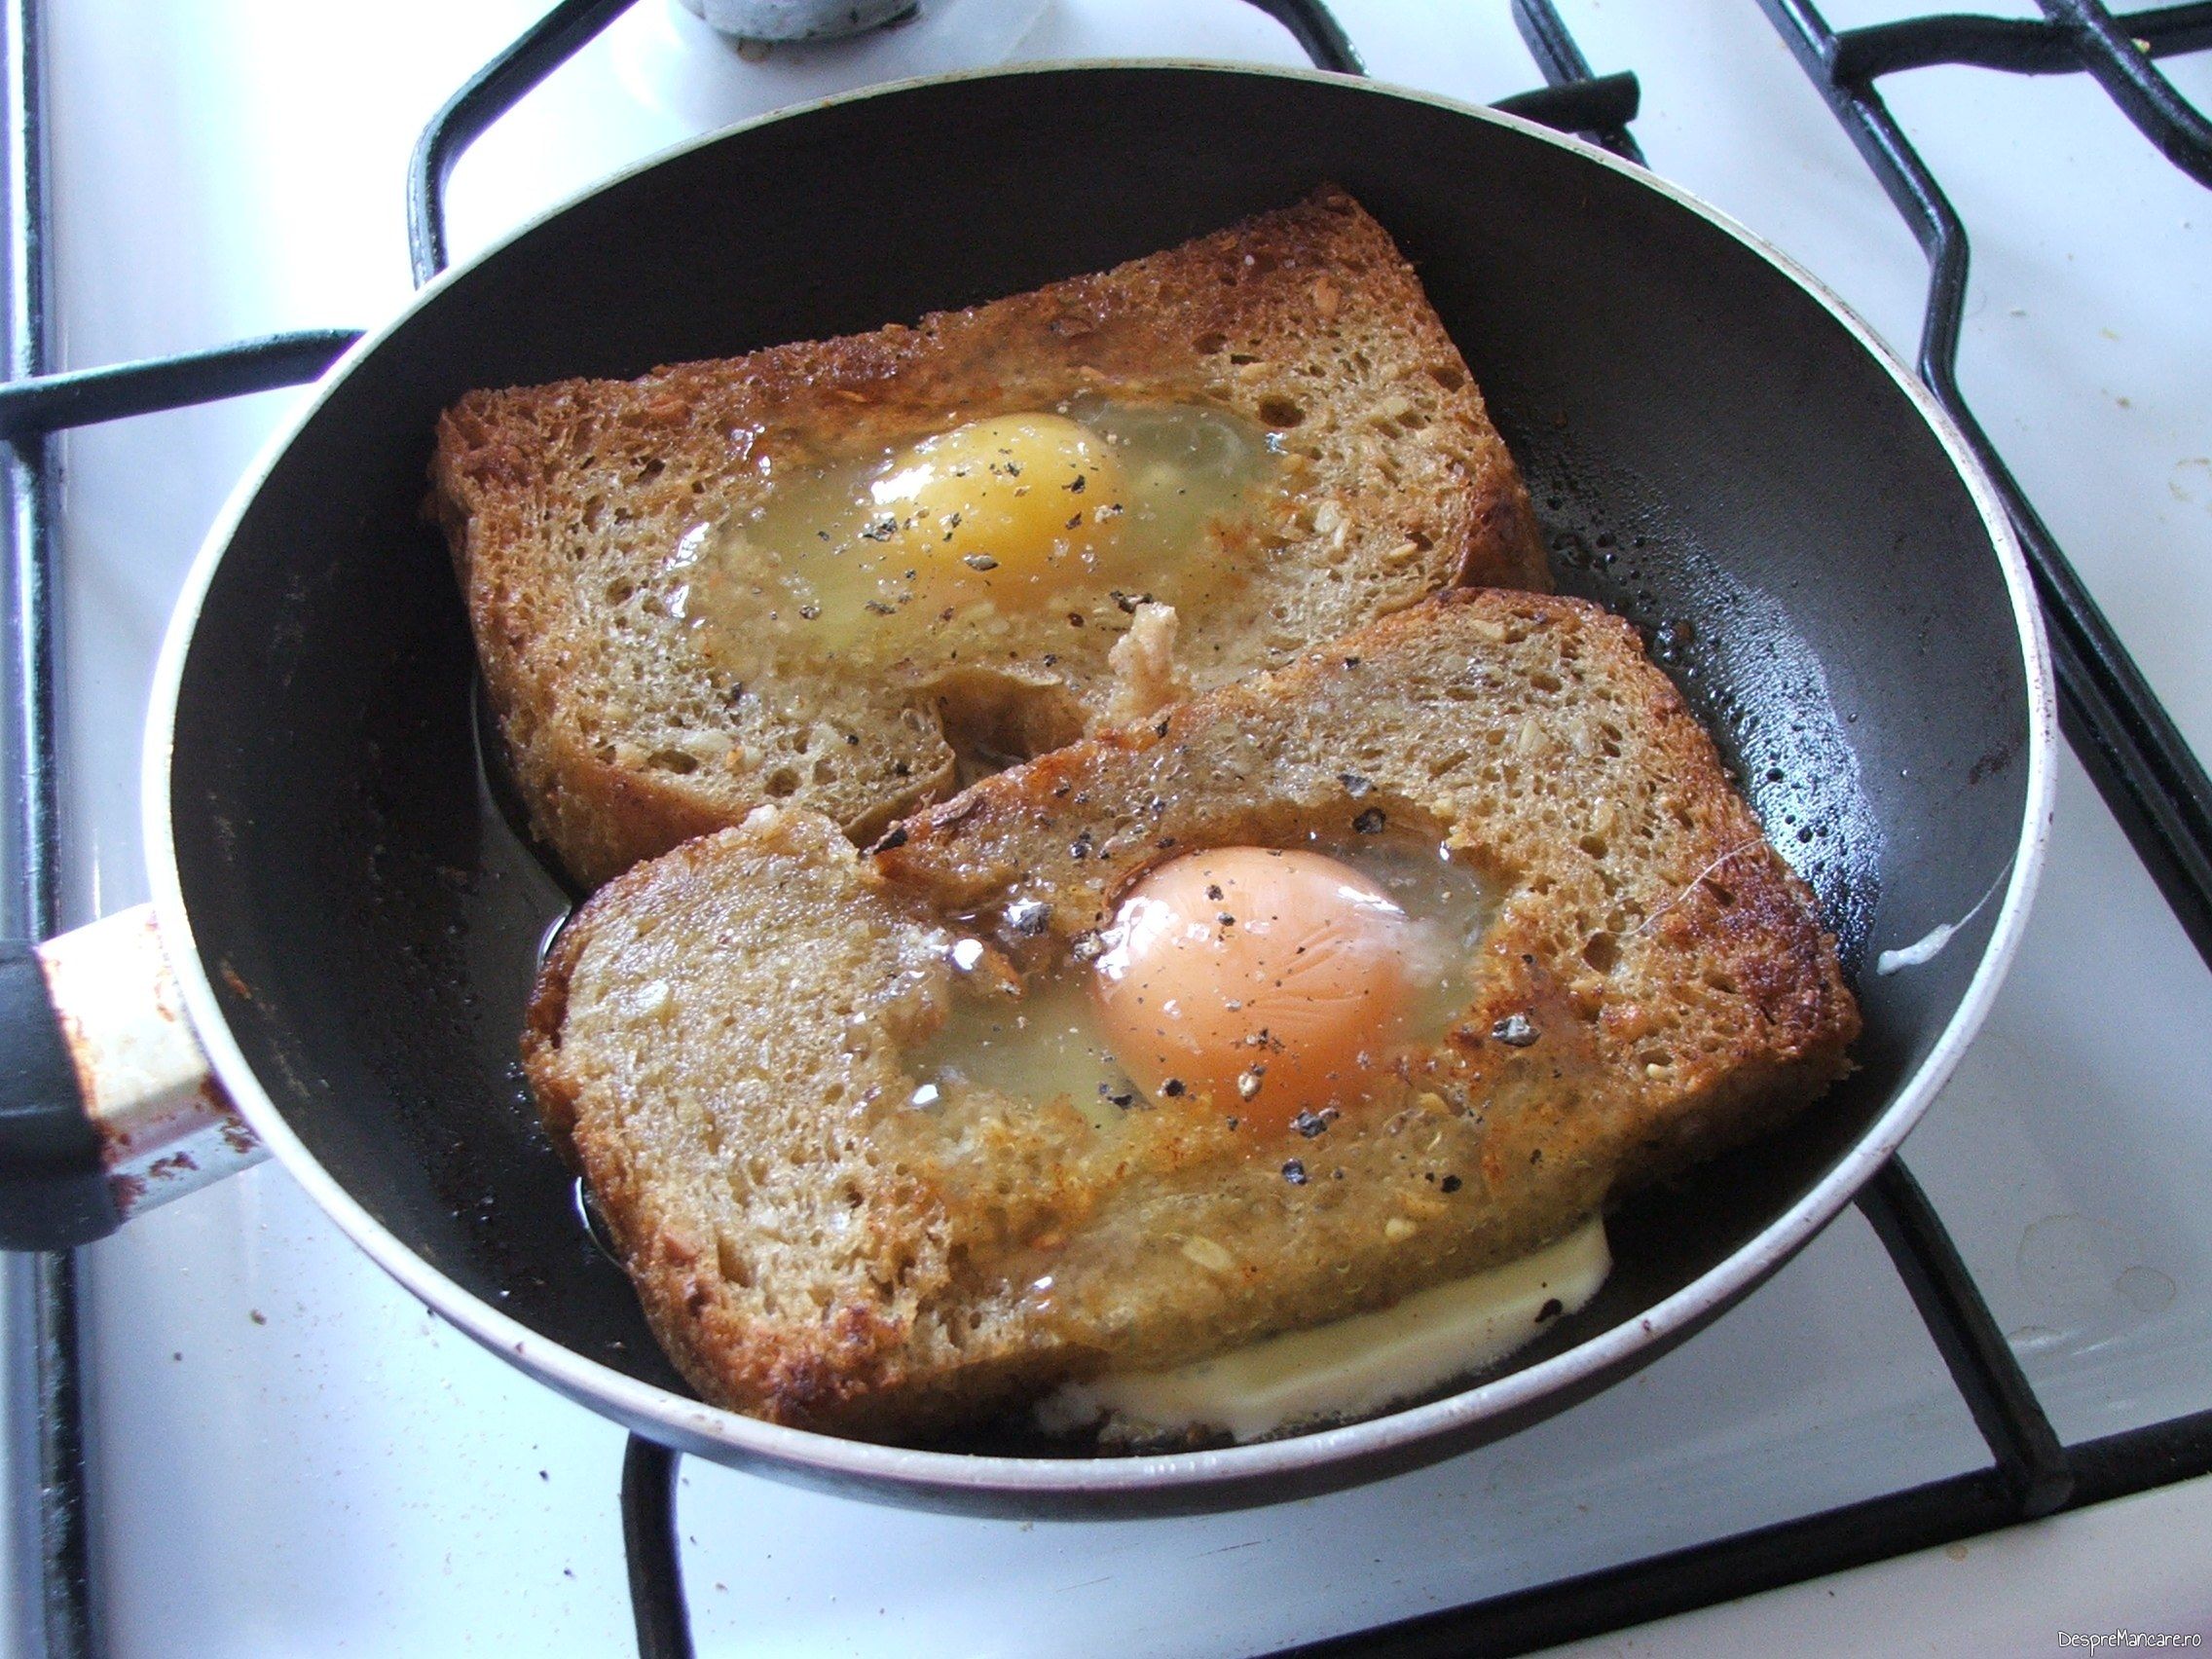 Oua de gaina scoase din coaja, puse in gaura de la feliile de paine pentru ochiuri cu cascaval afumat si paine prajita.